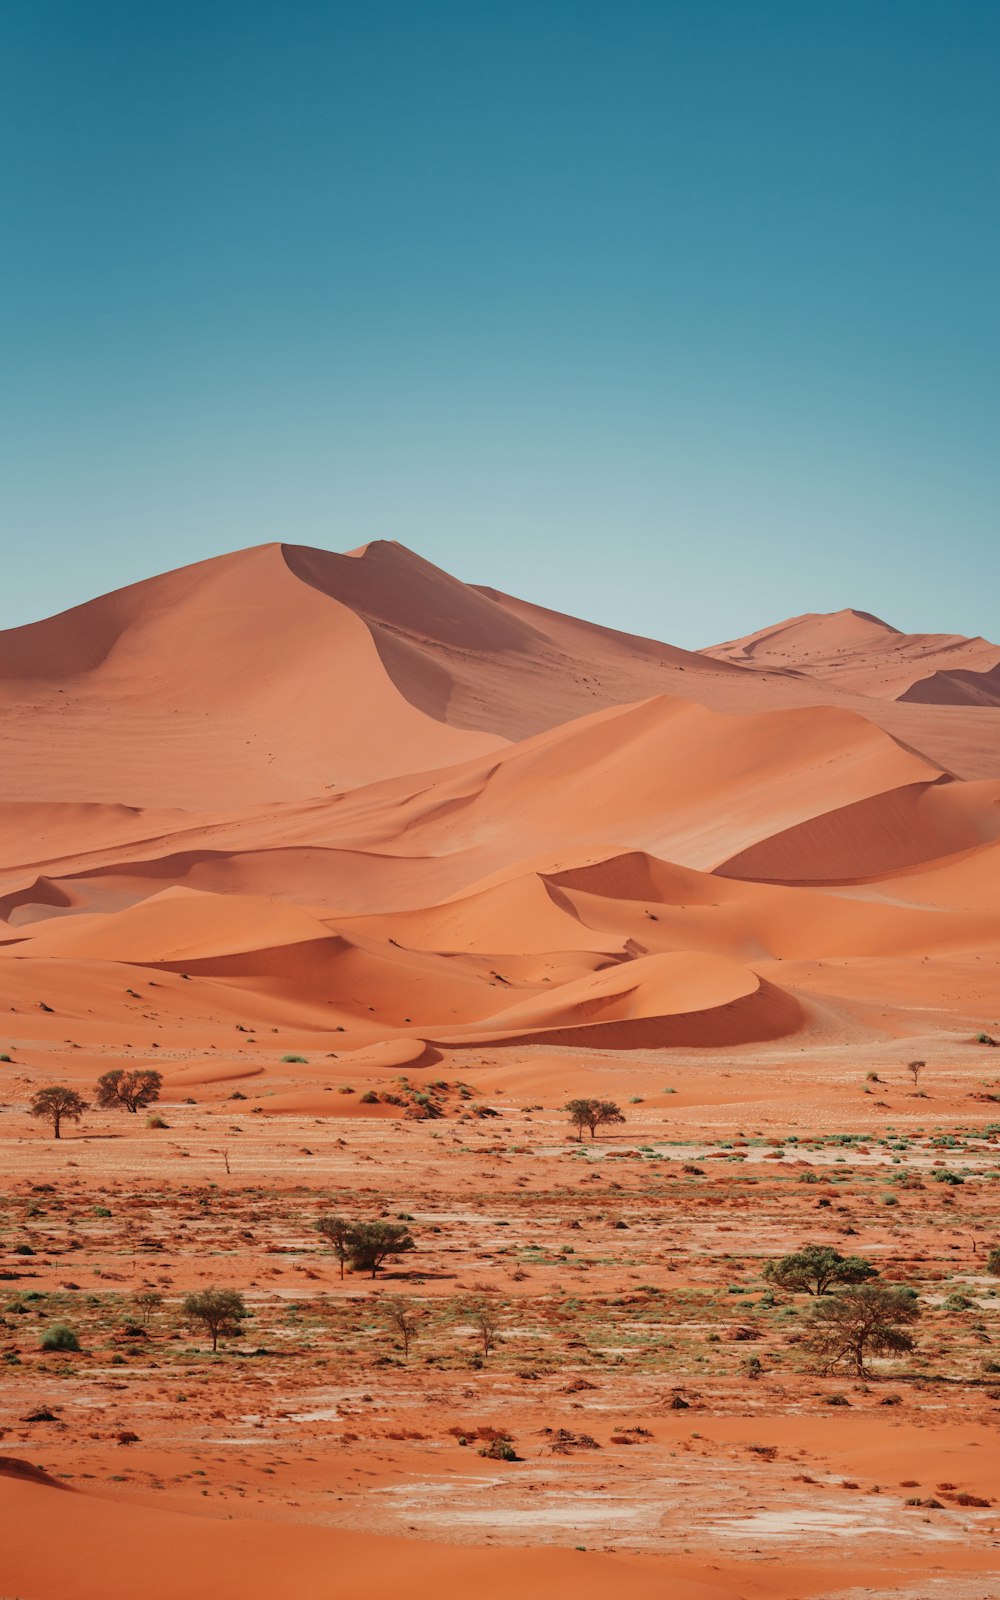 Un paesaggio desertico con dune di sabbia